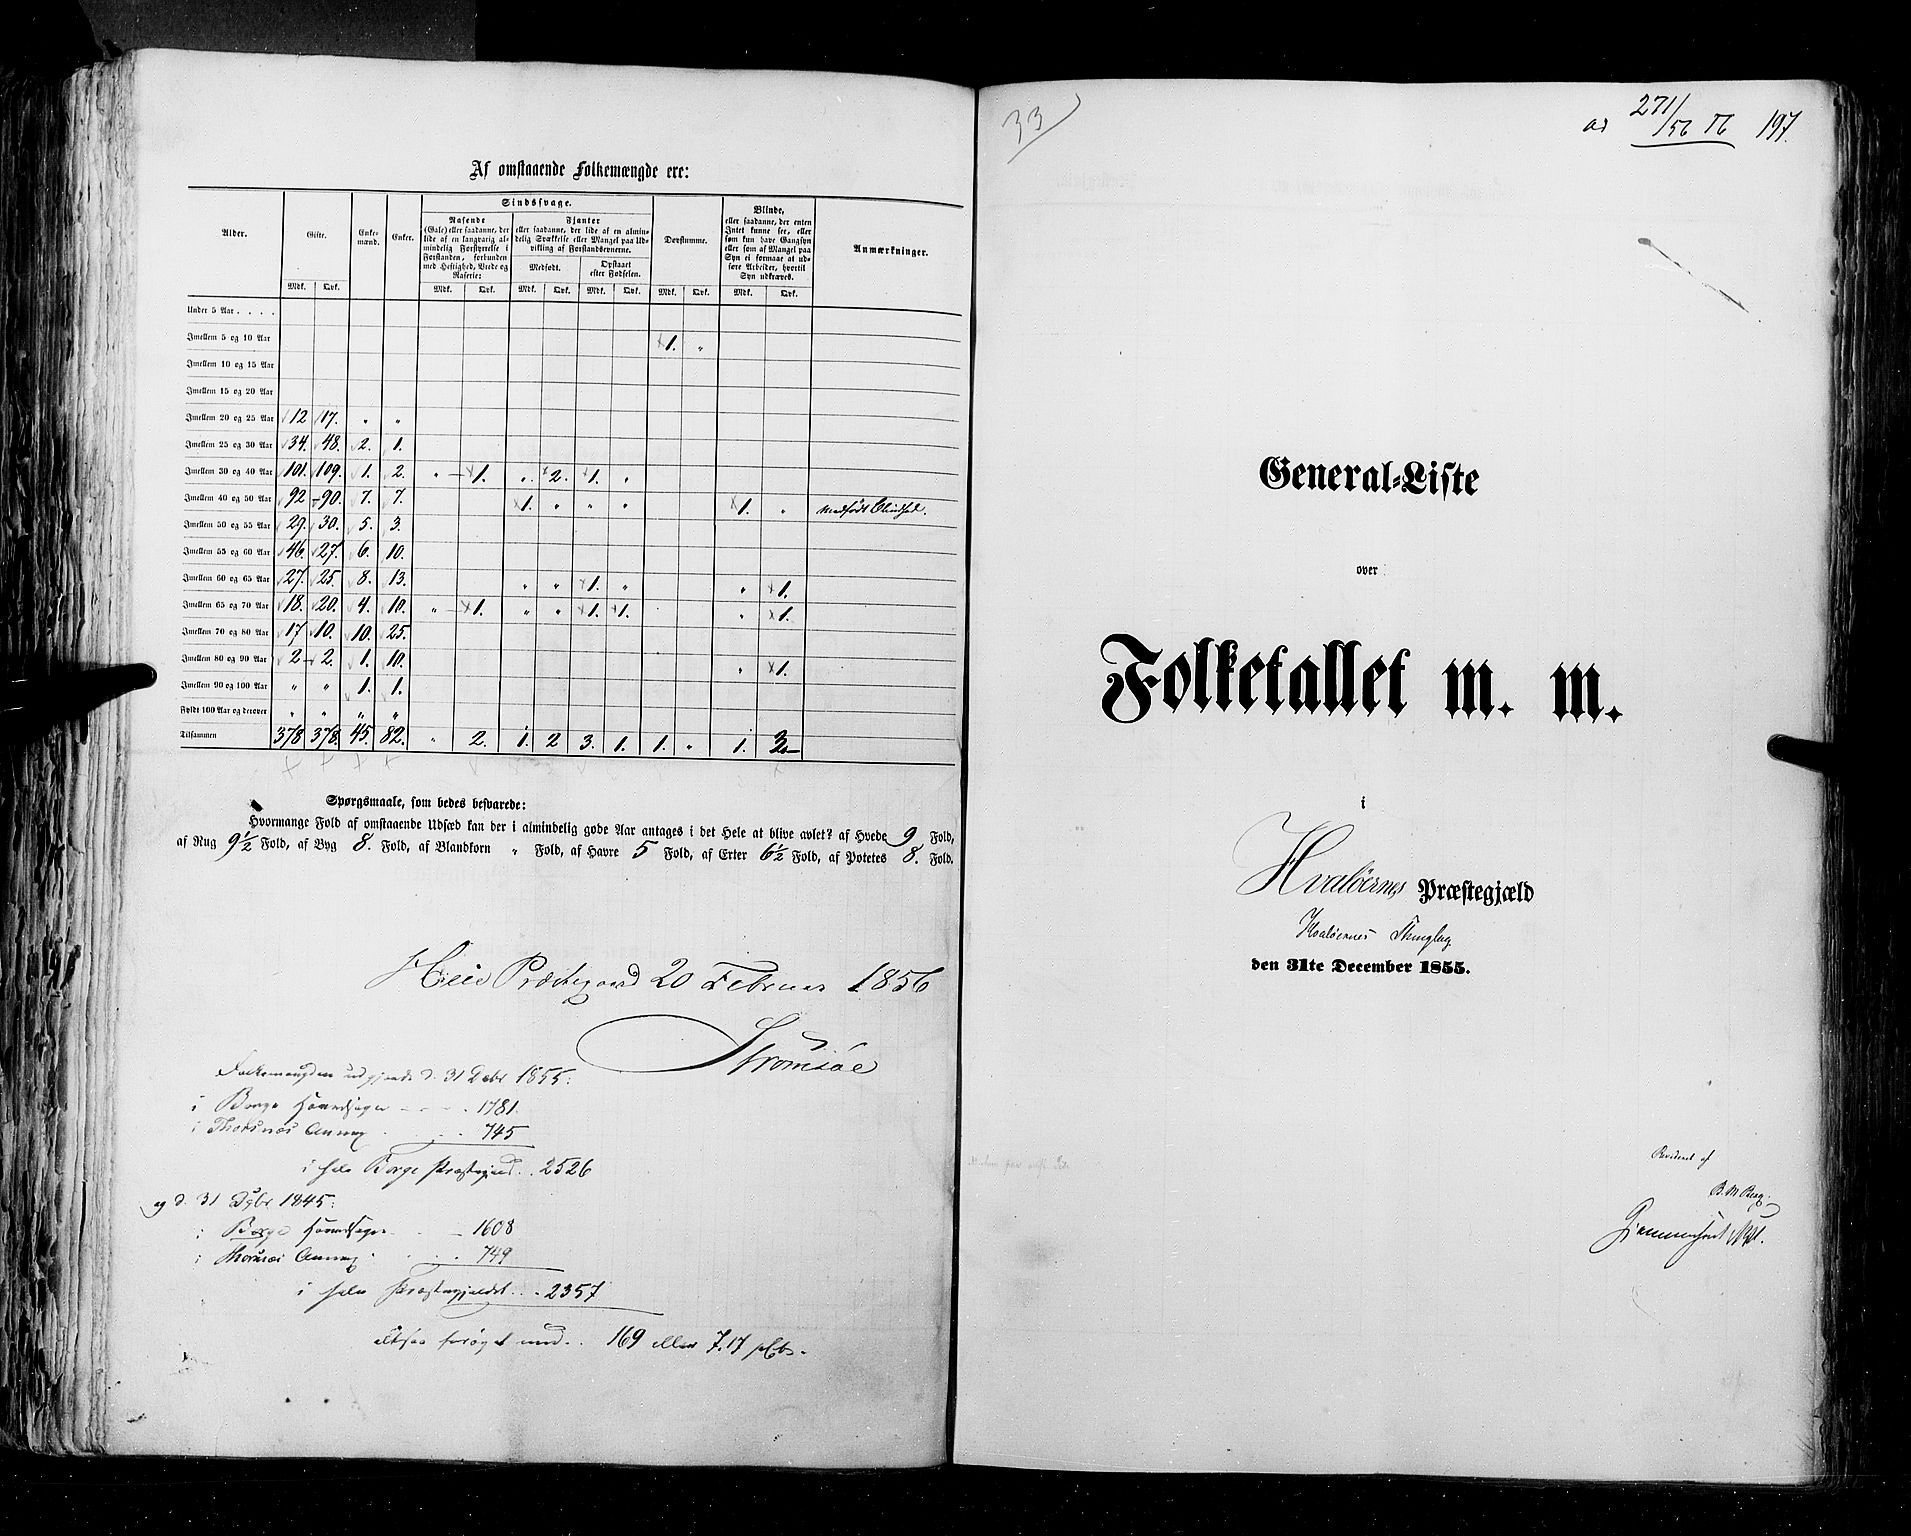 RA, Census 1855, vol. 1: Akershus amt, Smålenenes amt og Hedemarken amt, 1855, p. 197